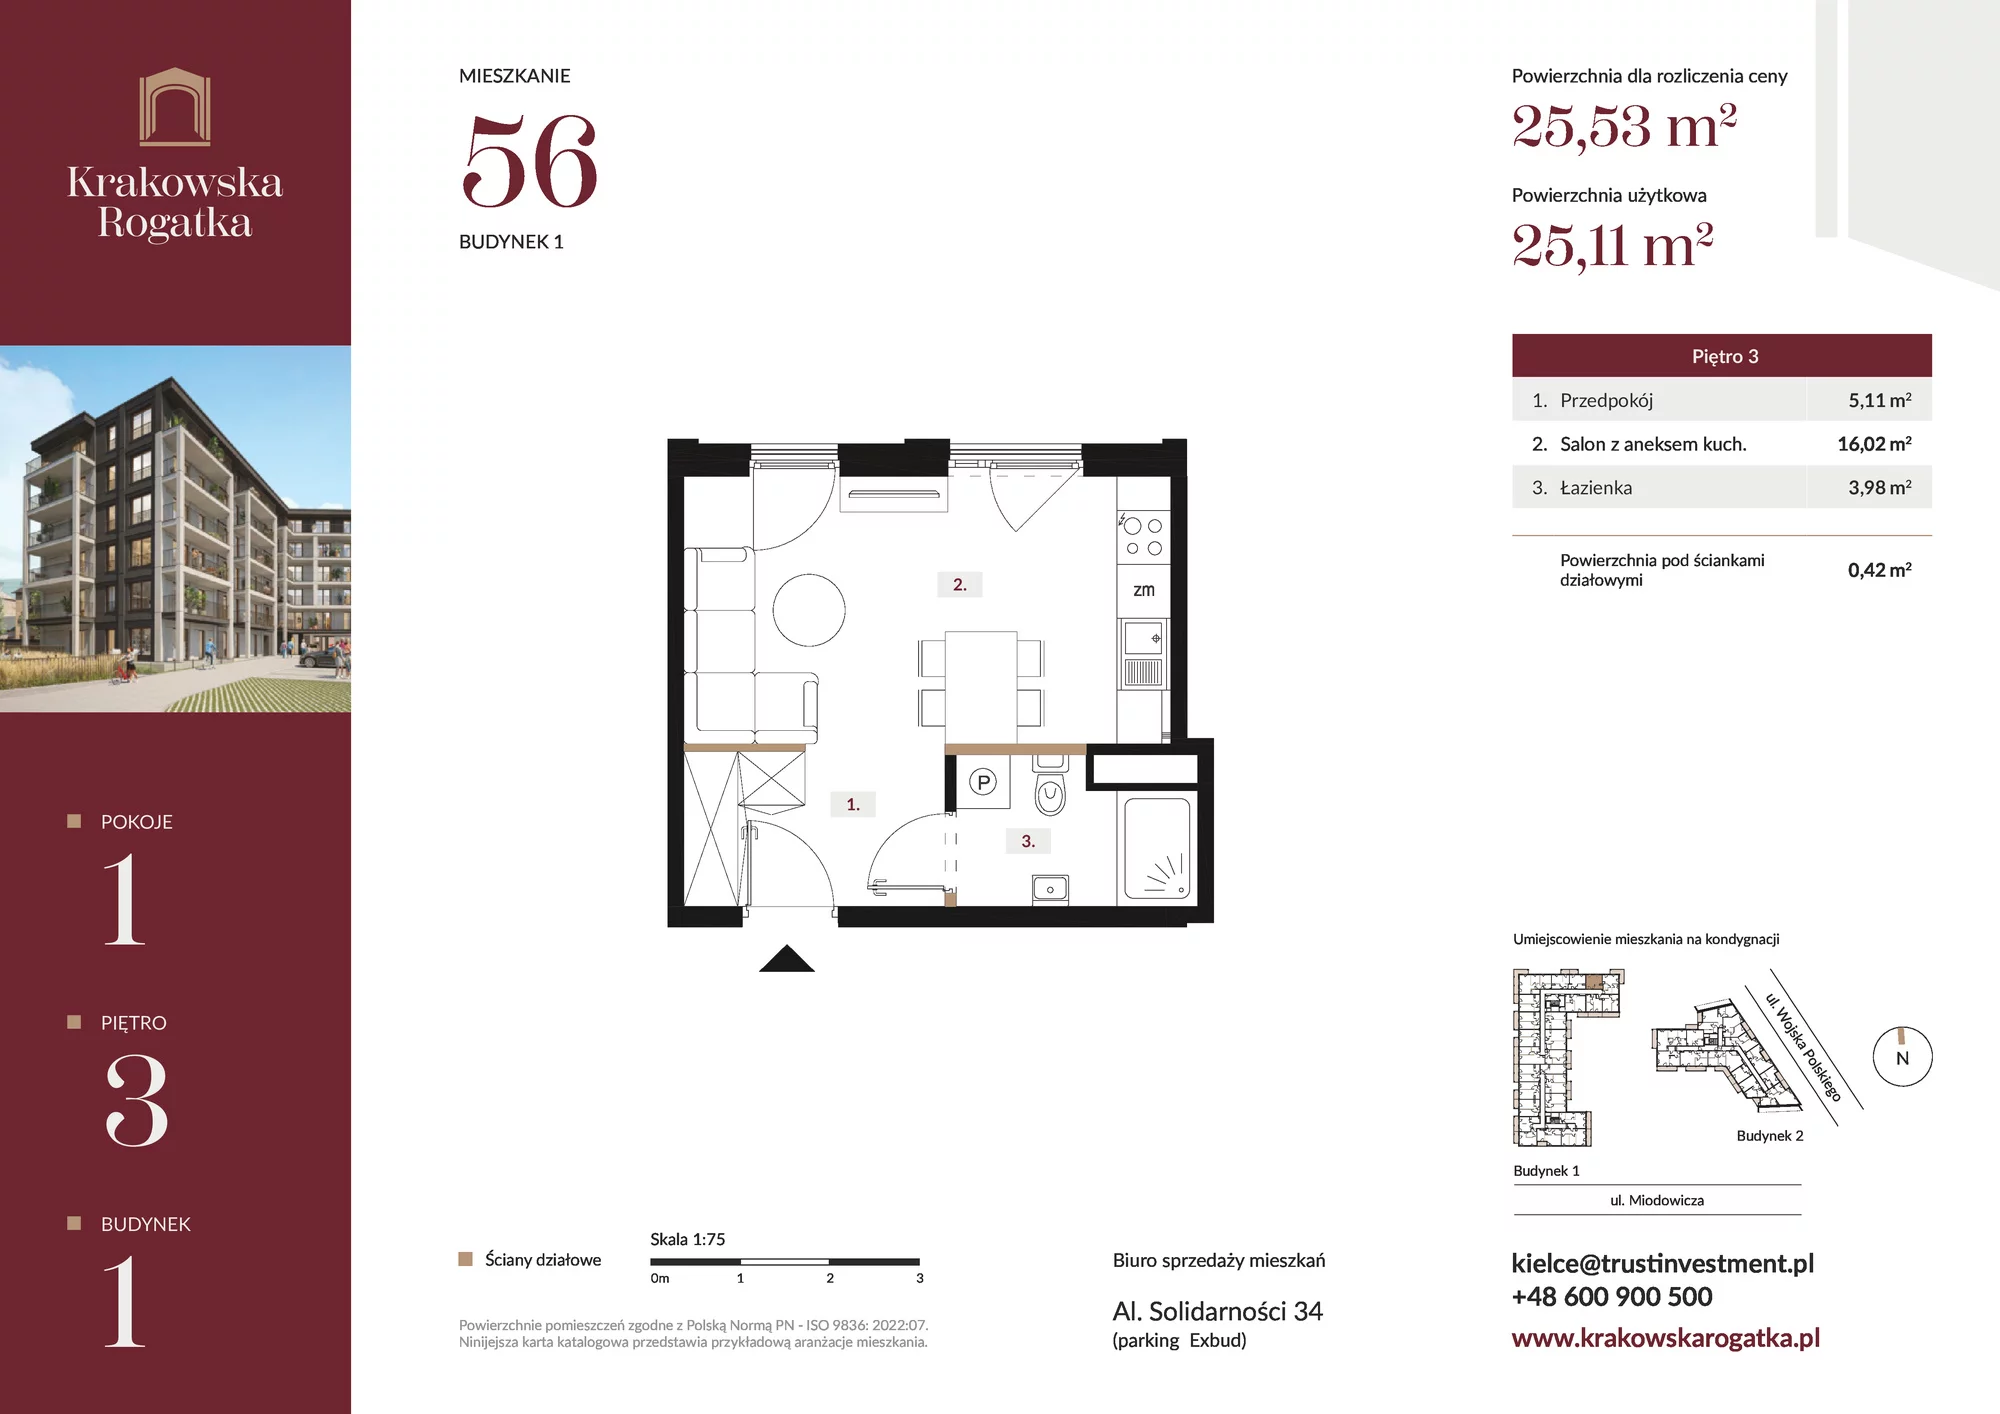 Mieszkanie 25,53 m², piętro 3, oferta nr Budynek 1 Mieszkanie 56, Krakowska Rogatka, Kielce, ul. Miodowicza 1